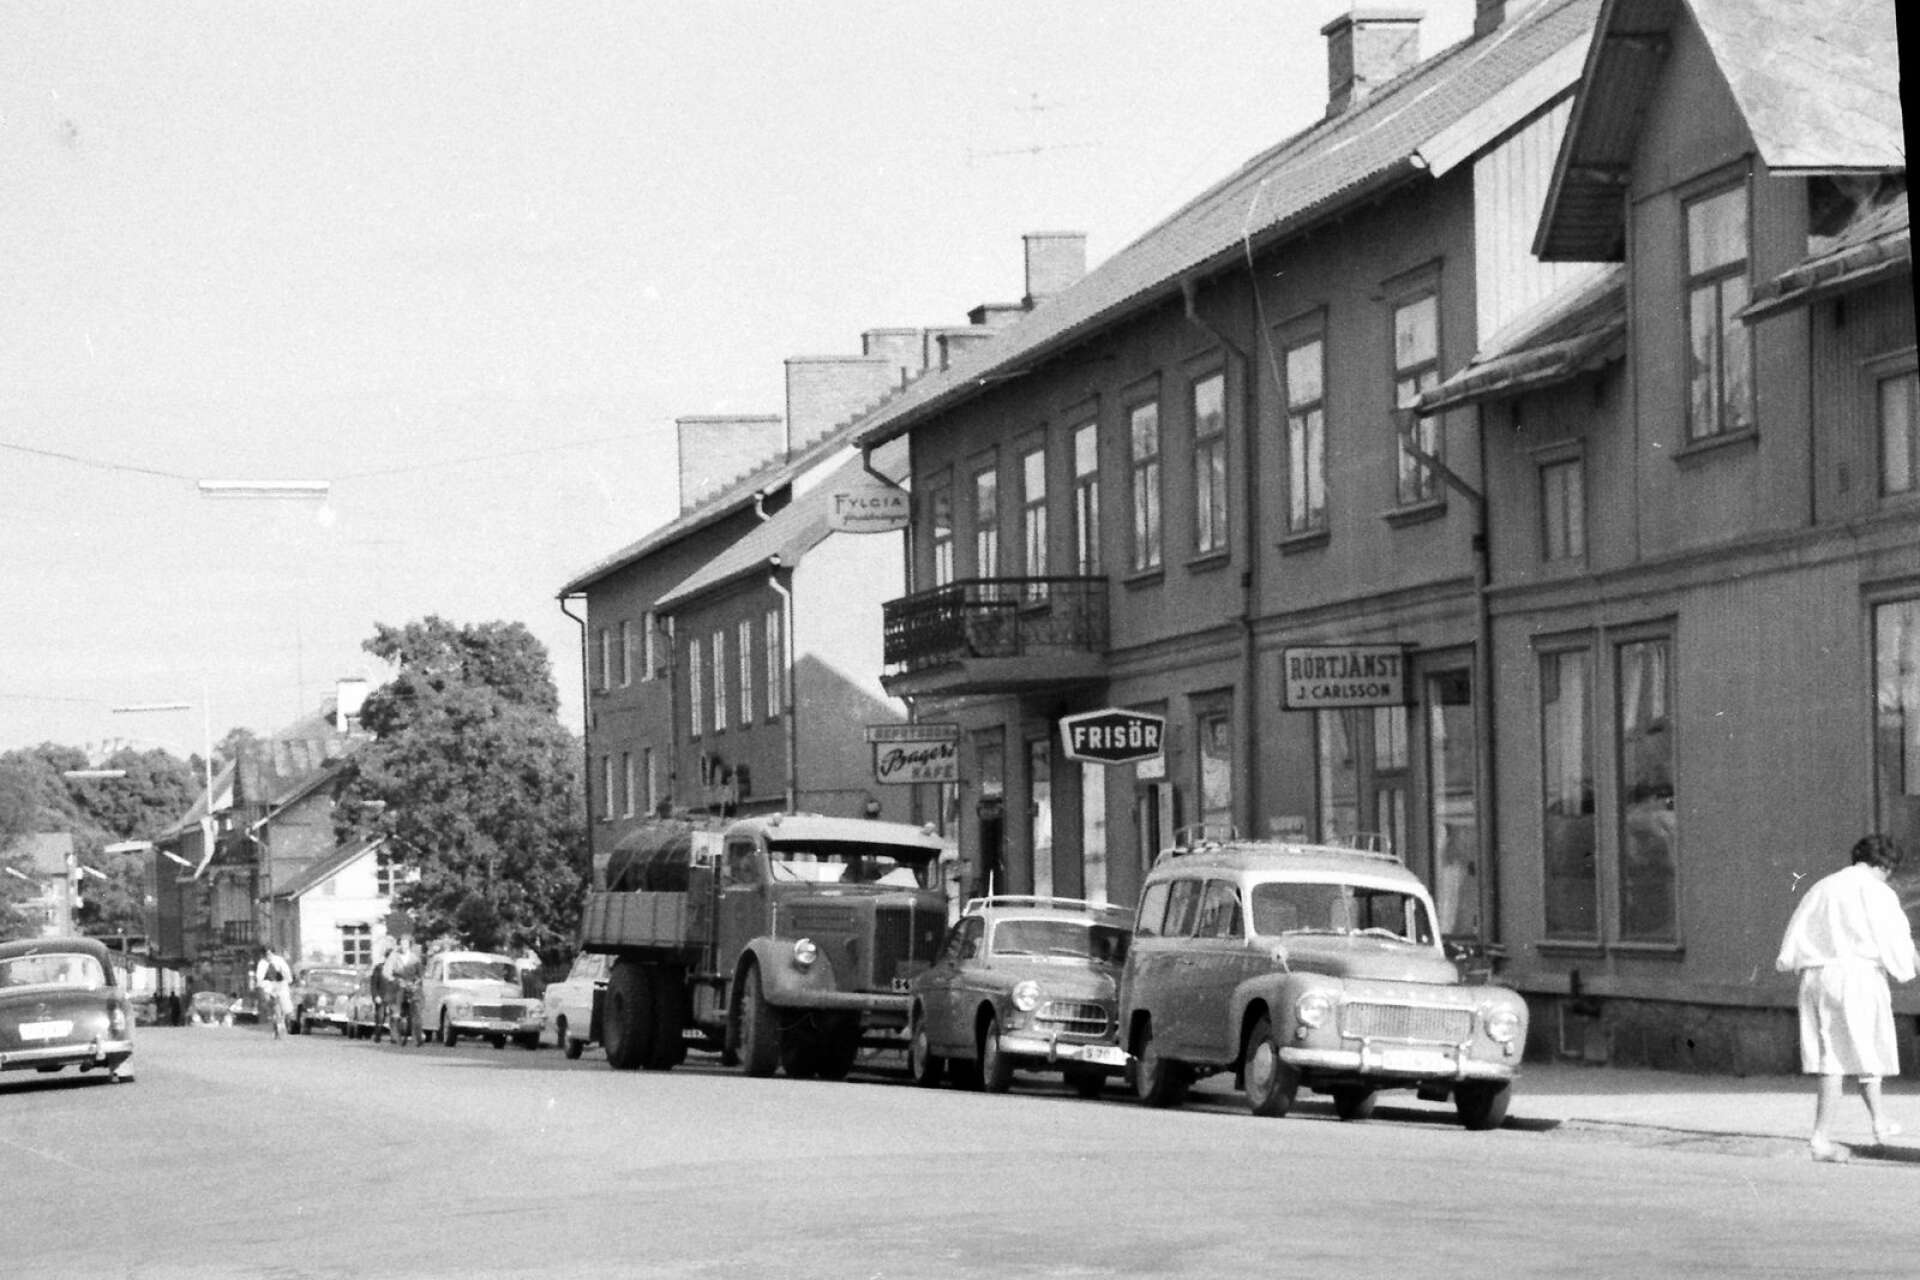 Hugo Bengtsson hade bageri och café i Zetterlundshuset vid Västra Storgatan. Huset finns som bekant fortfarande kvar. Bengtssons skylt ses strax ovanför lastbilen. Längre till vänster i bilden kan man skymta huset som inrymde Systrarna Ödkvists hembageri.